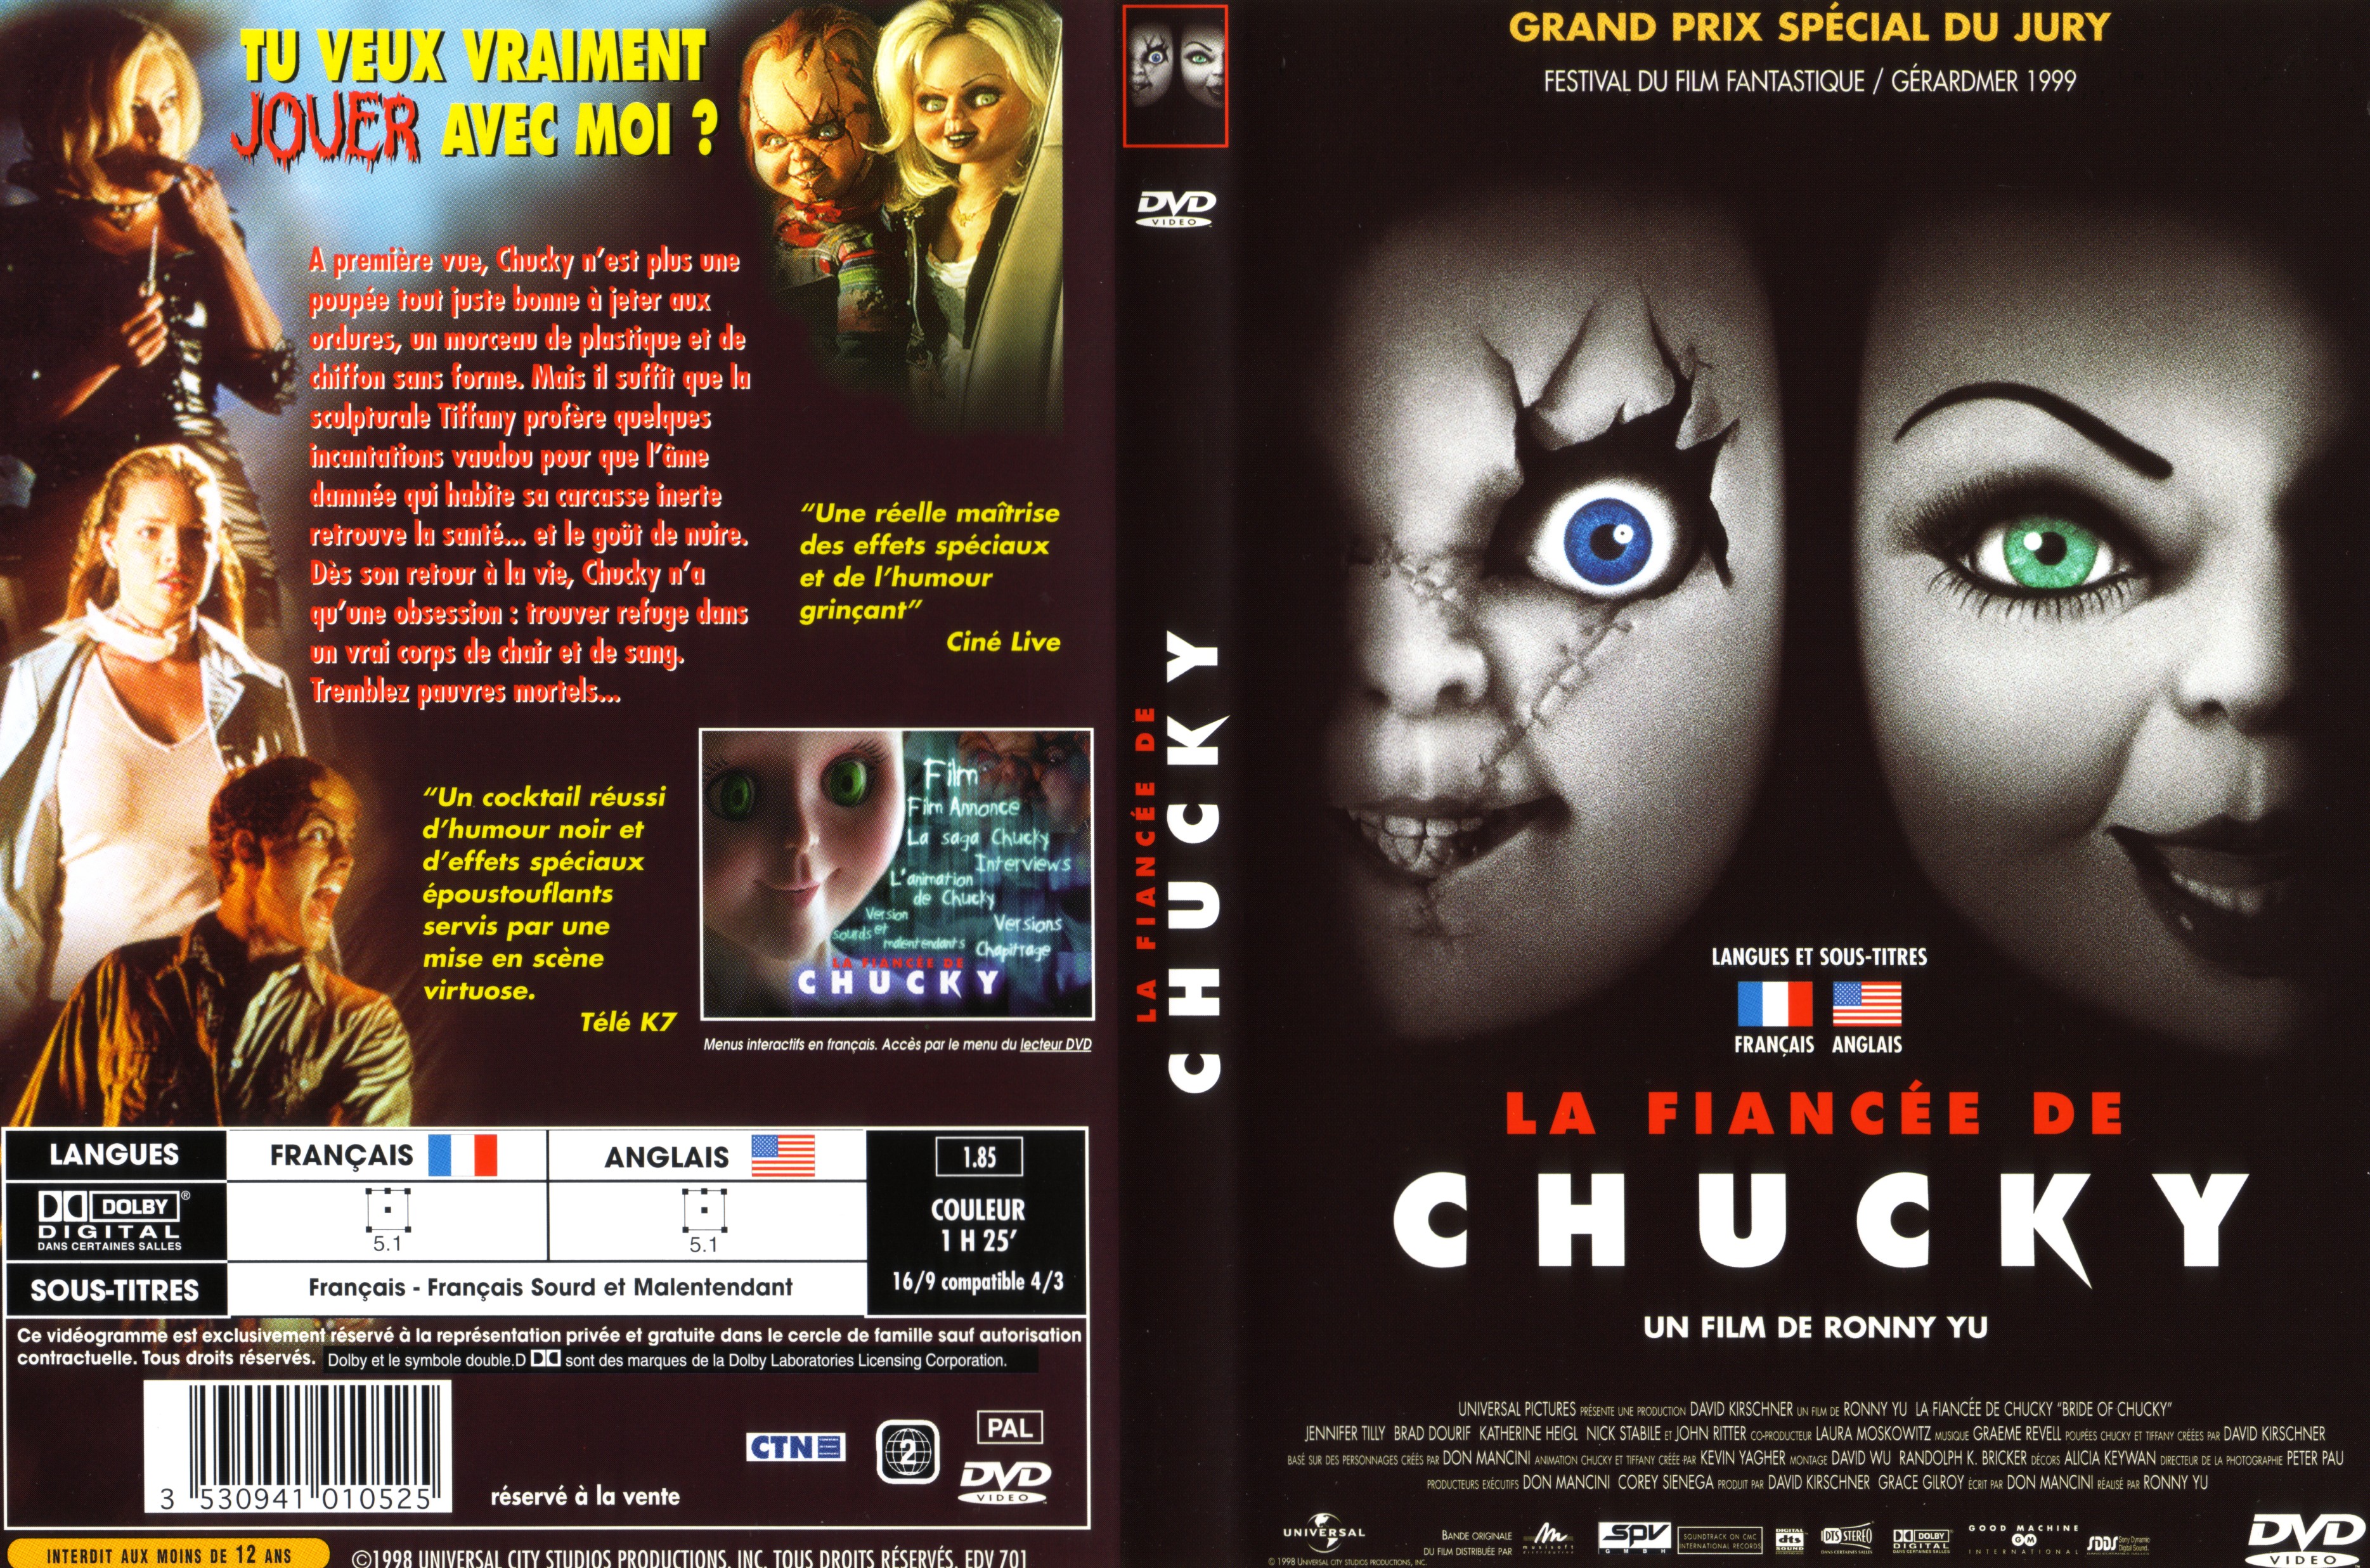 Jaquette DVD La fiance de Chucky v2